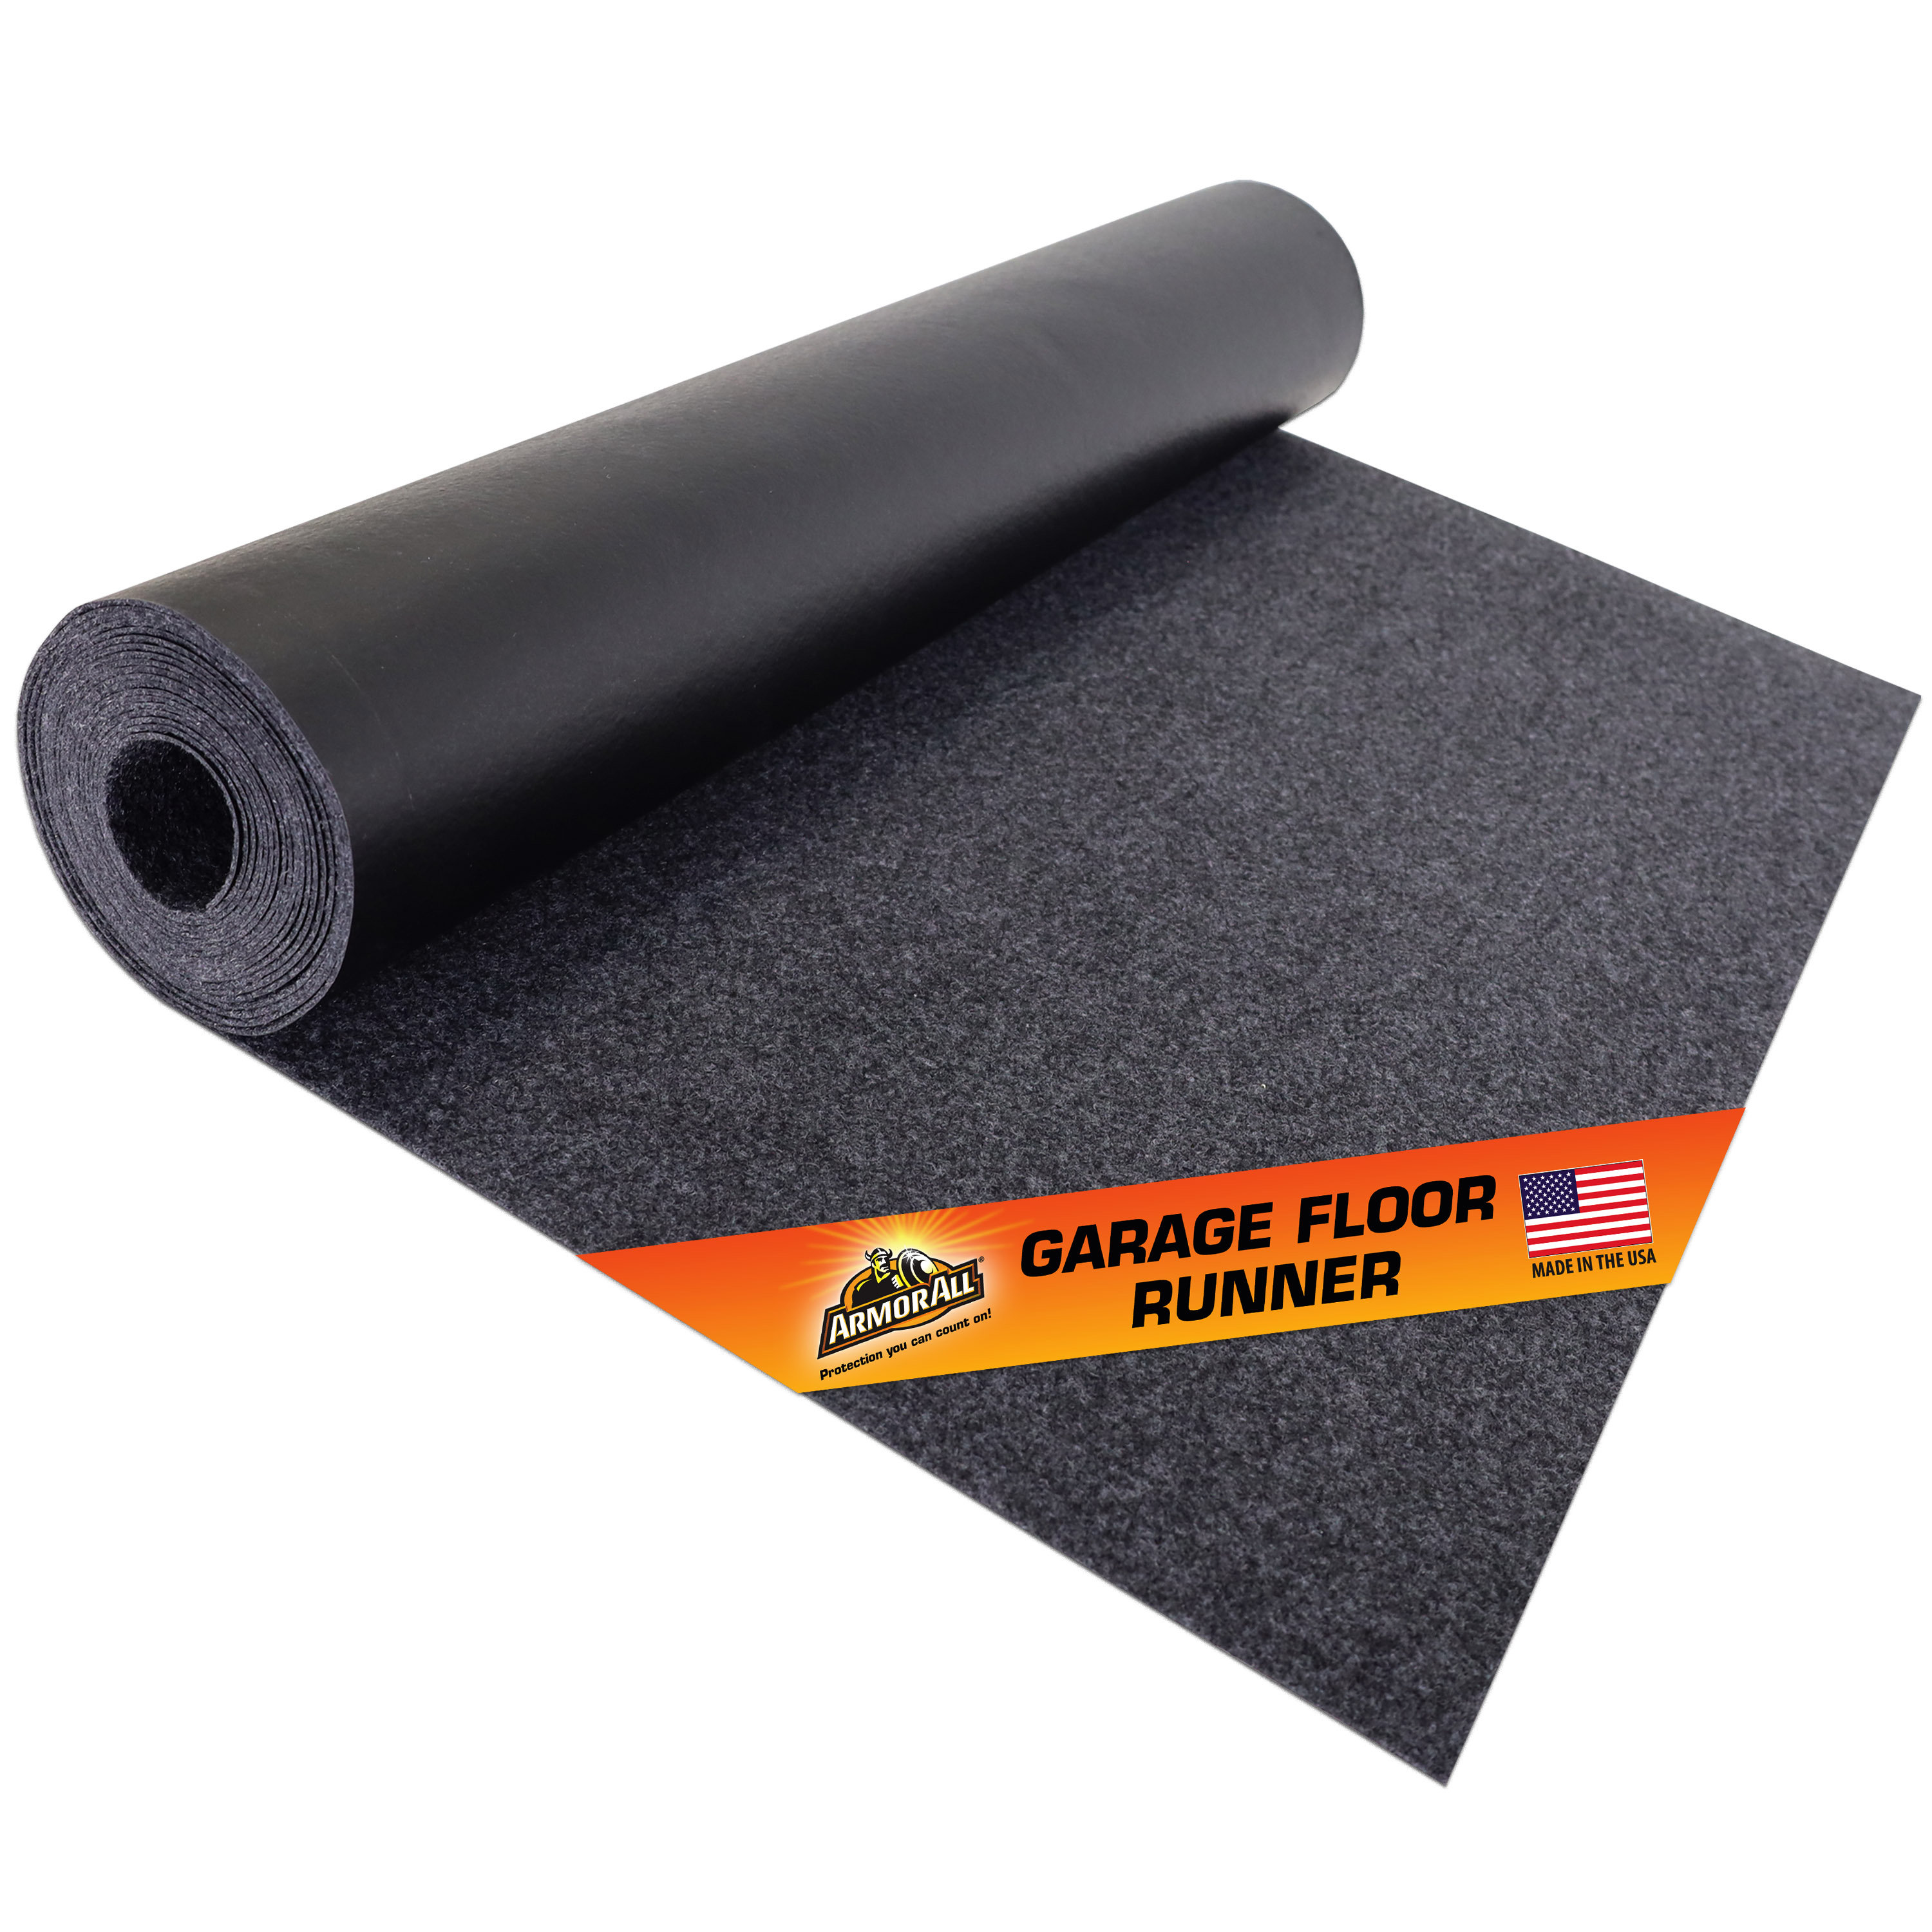 Armor All Premium Garage Floor Mat, Heavy Duty/Absorbent/Waterproof